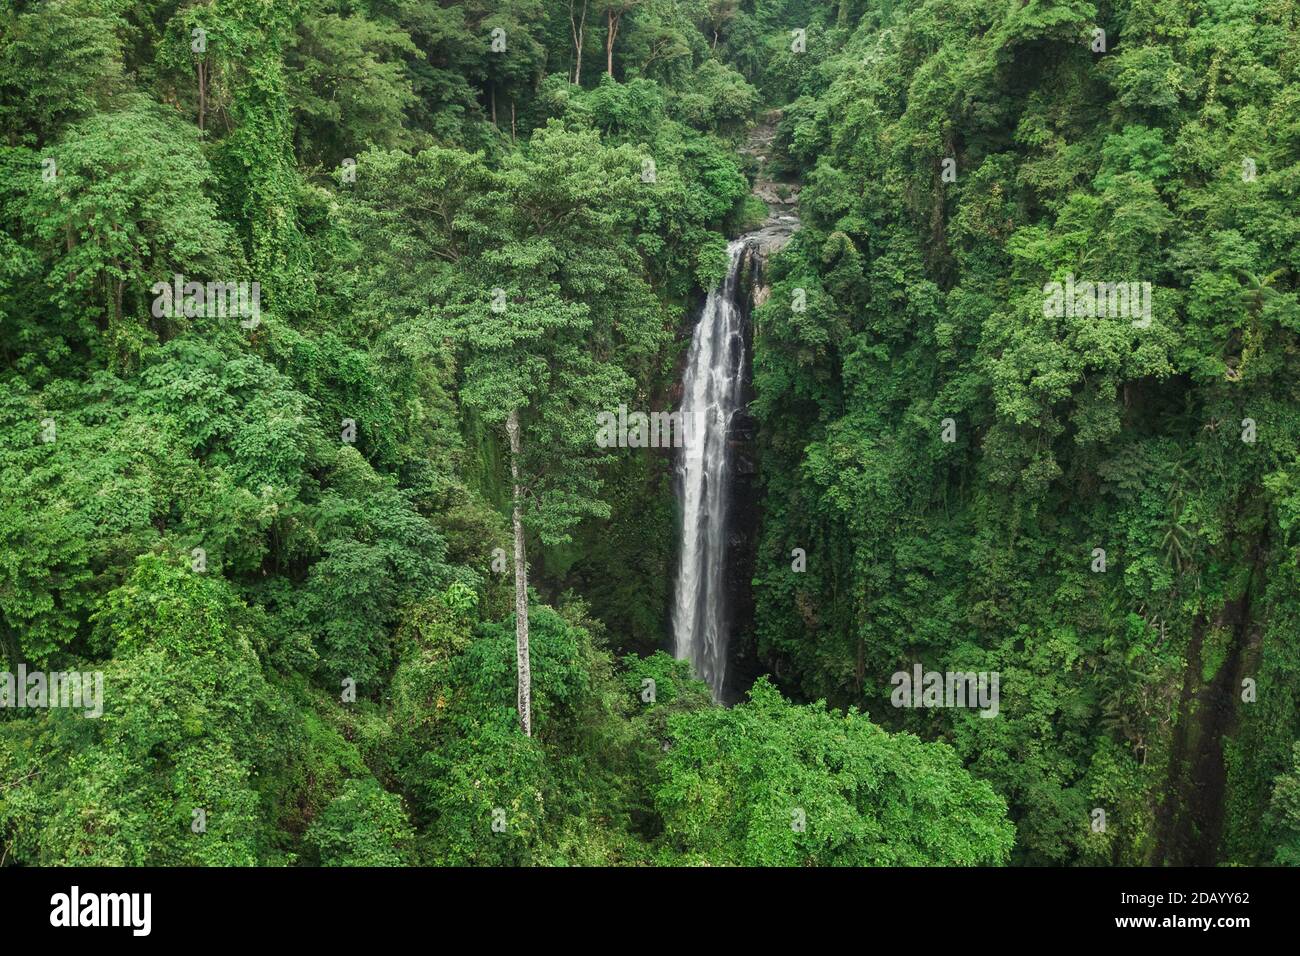 Luftdrohne Ansicht von großen versteckten Wasserfall im Dschungel Regenwald. Wilde unberührte Natur, grüner Hintergrund. Bali, Indonesien Stockfoto